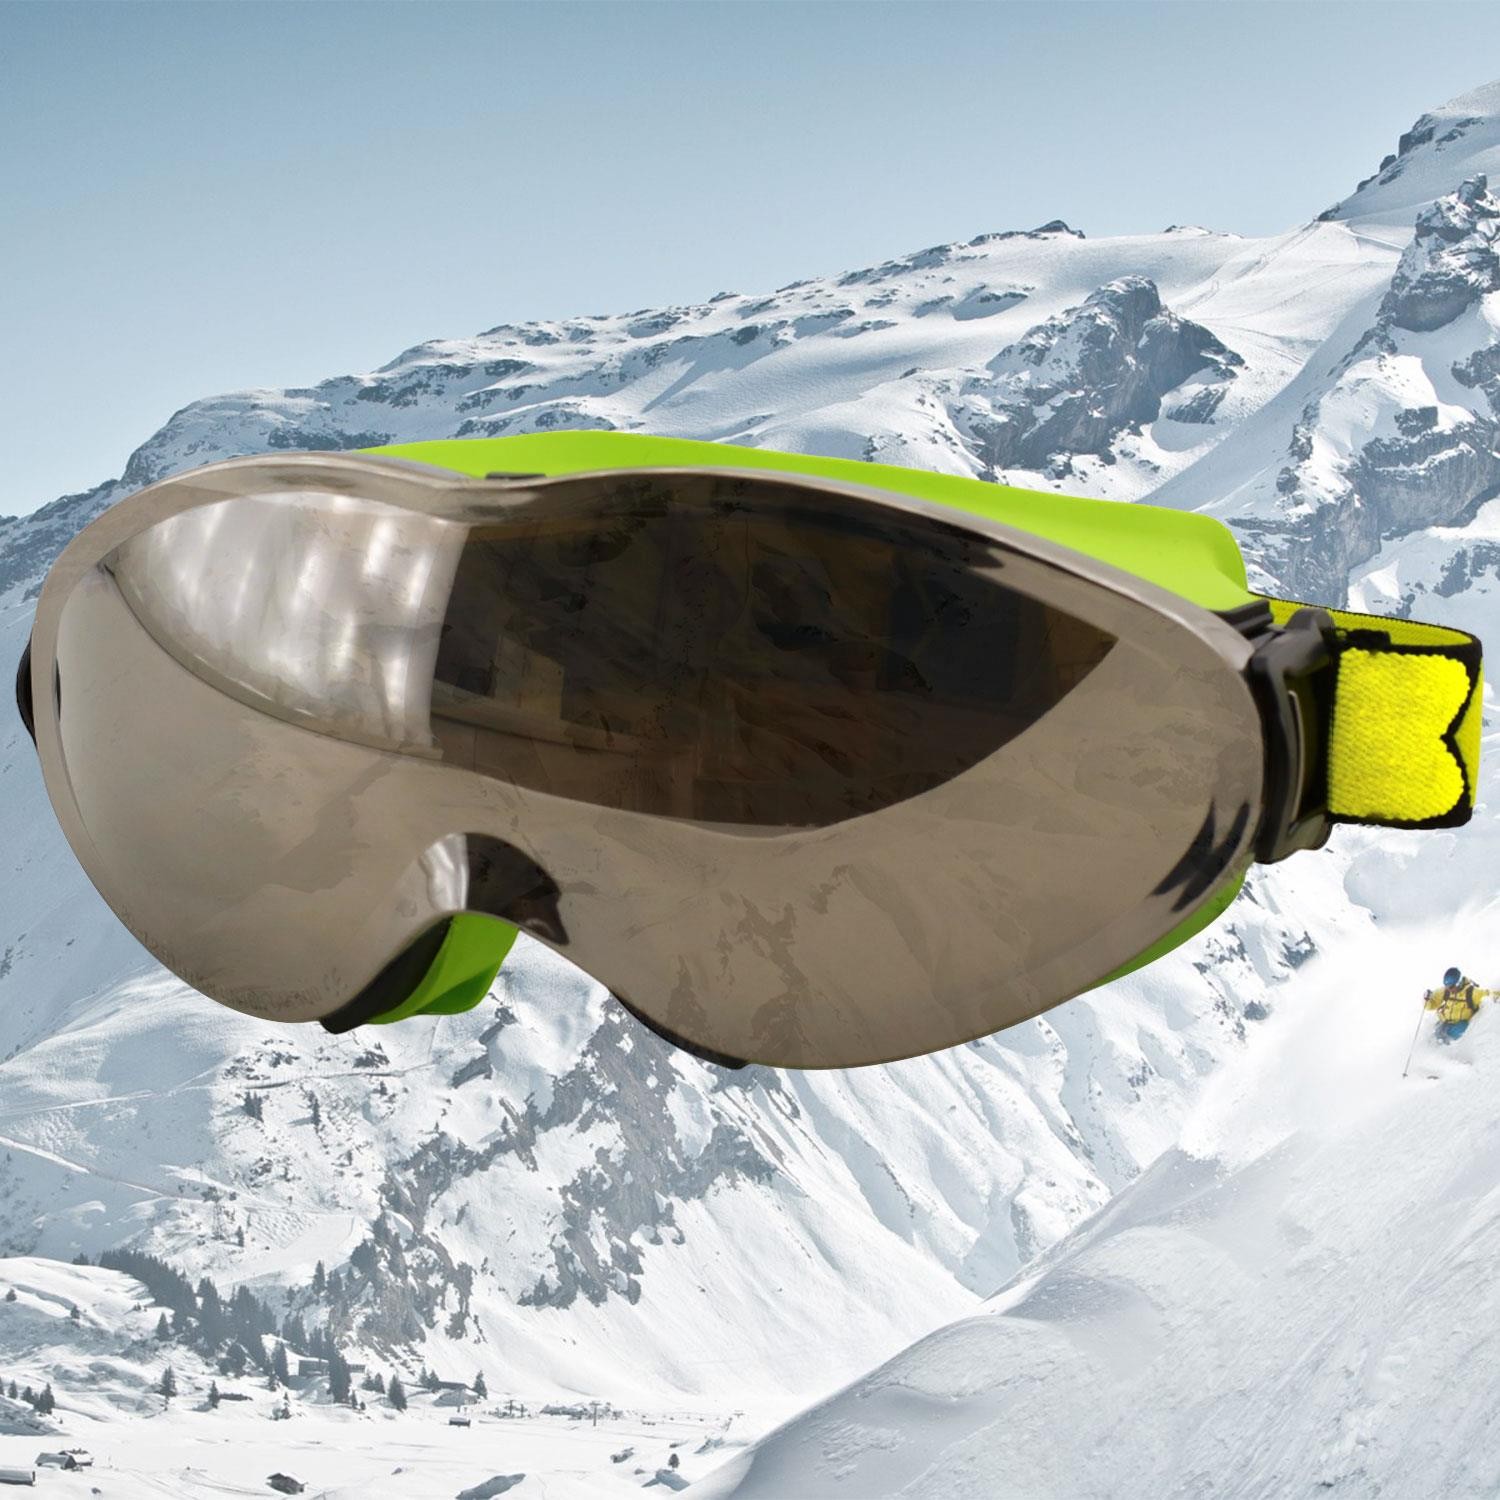 Bellasimo Kayak Gözlüğü Değiştirebilir Camlı Antifog Güneş Kar Gözlük Gümüş Snowboard Glasses Gözlük